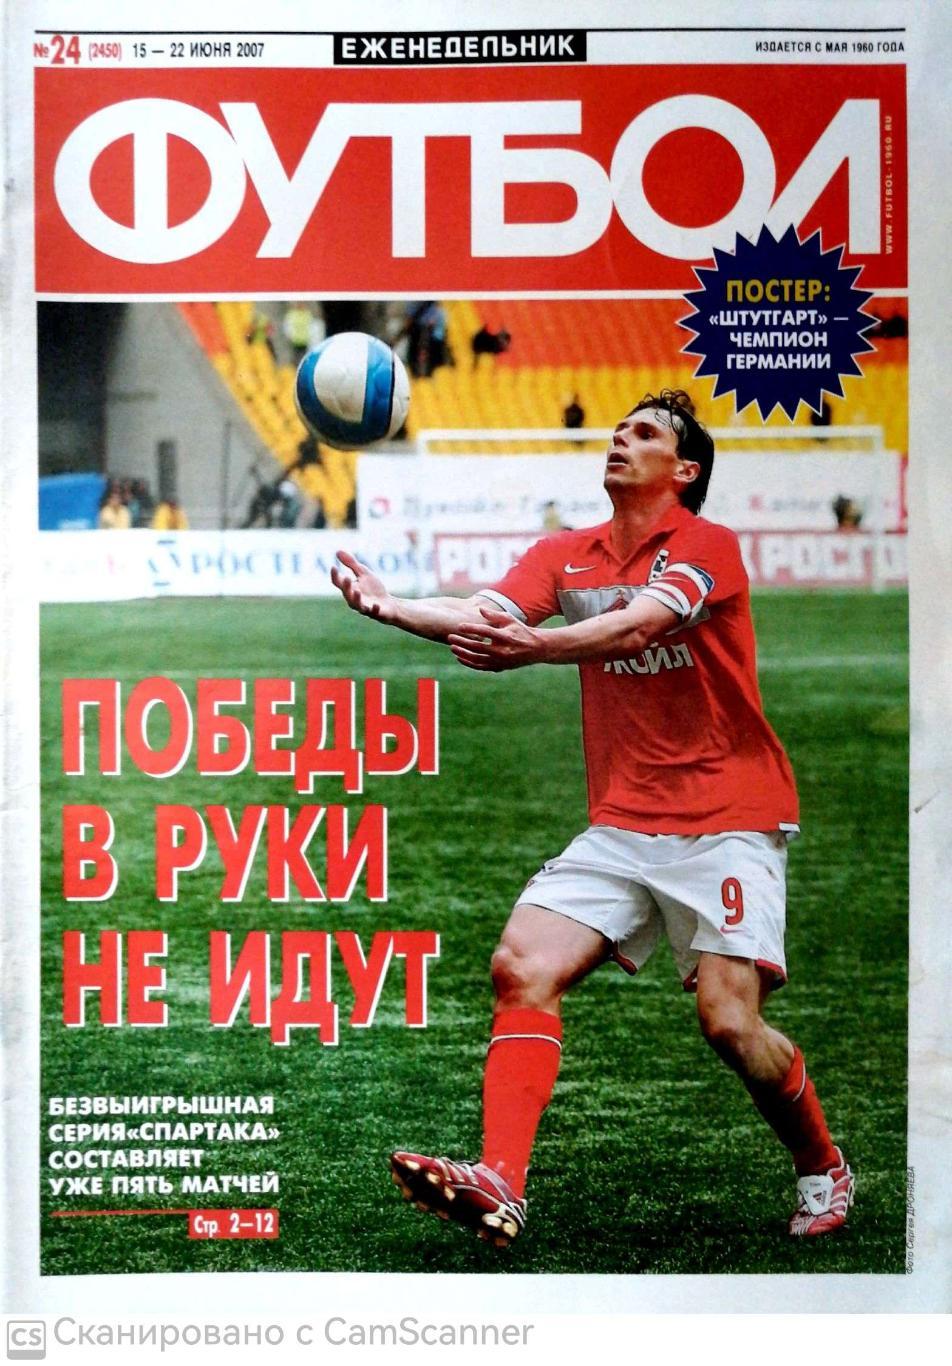 Еженедельник «Футбол» (Москва). 2007 год. №24 постер штутгарт